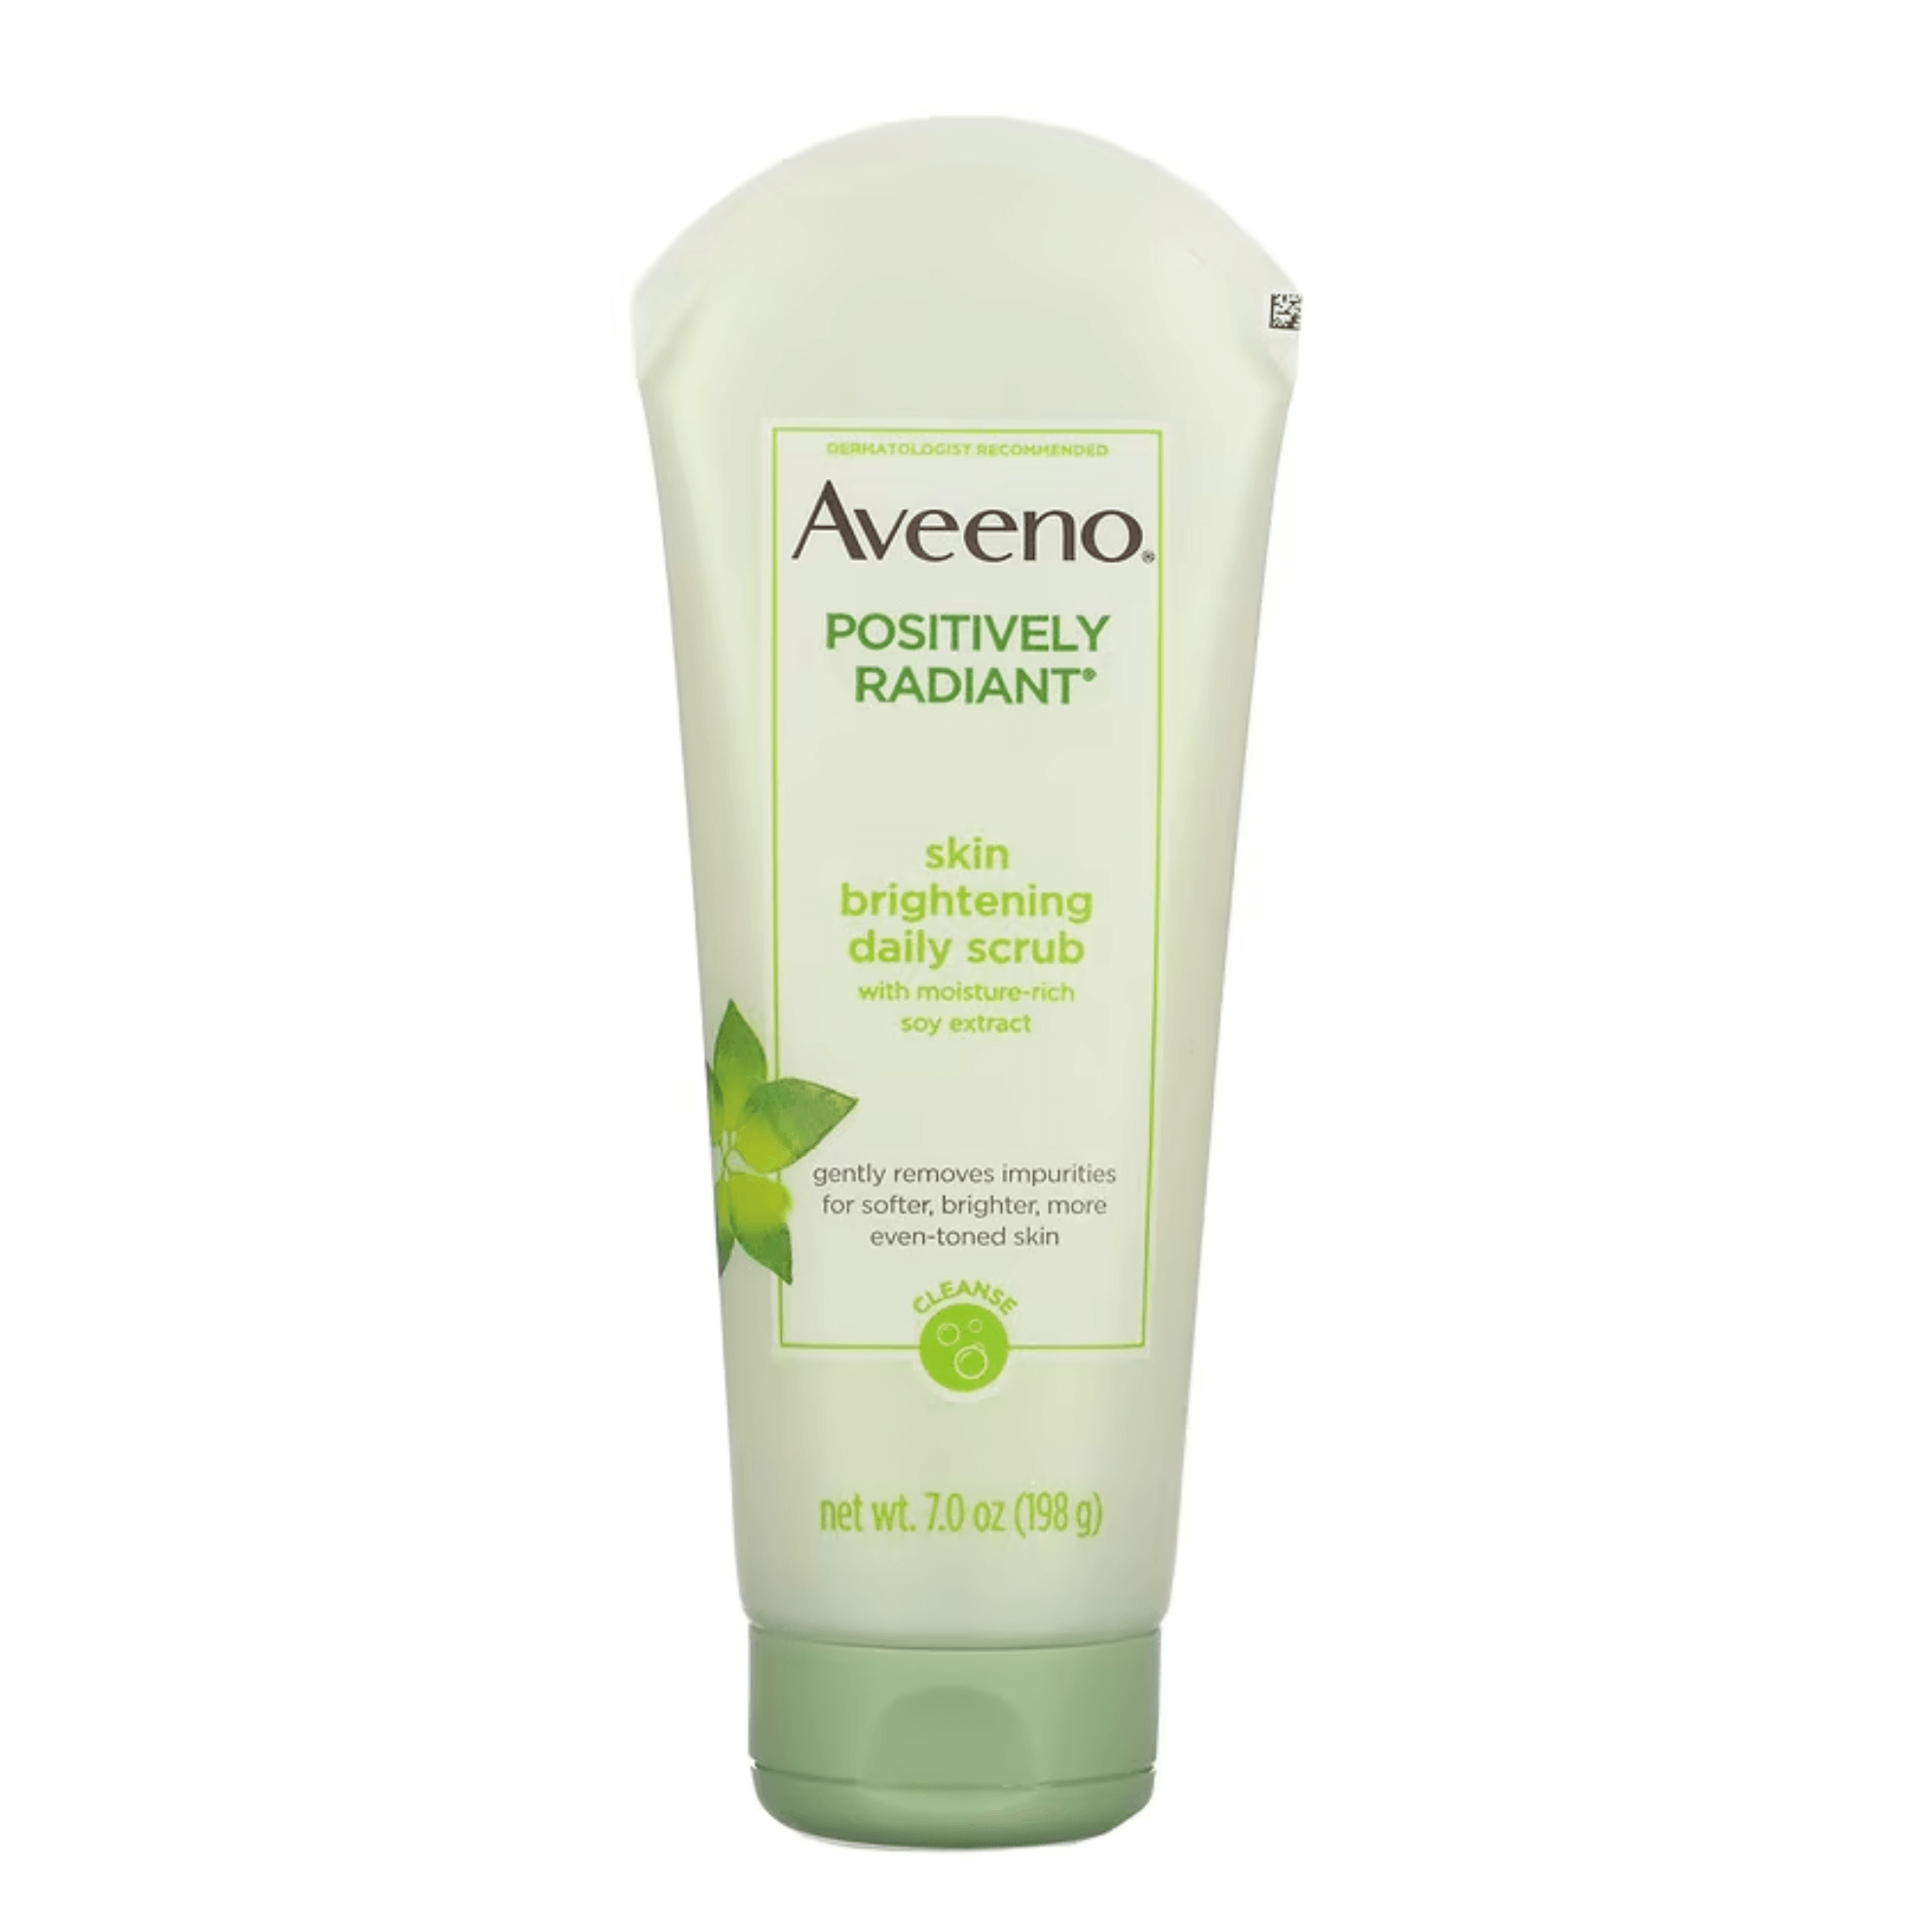 Ежедневный скраб для лица Aveeno Positively Radiant, 198 г aveeno active naturals positively radiant ежедневный осветляющий скраб для кожи 140 г 5 0 унций